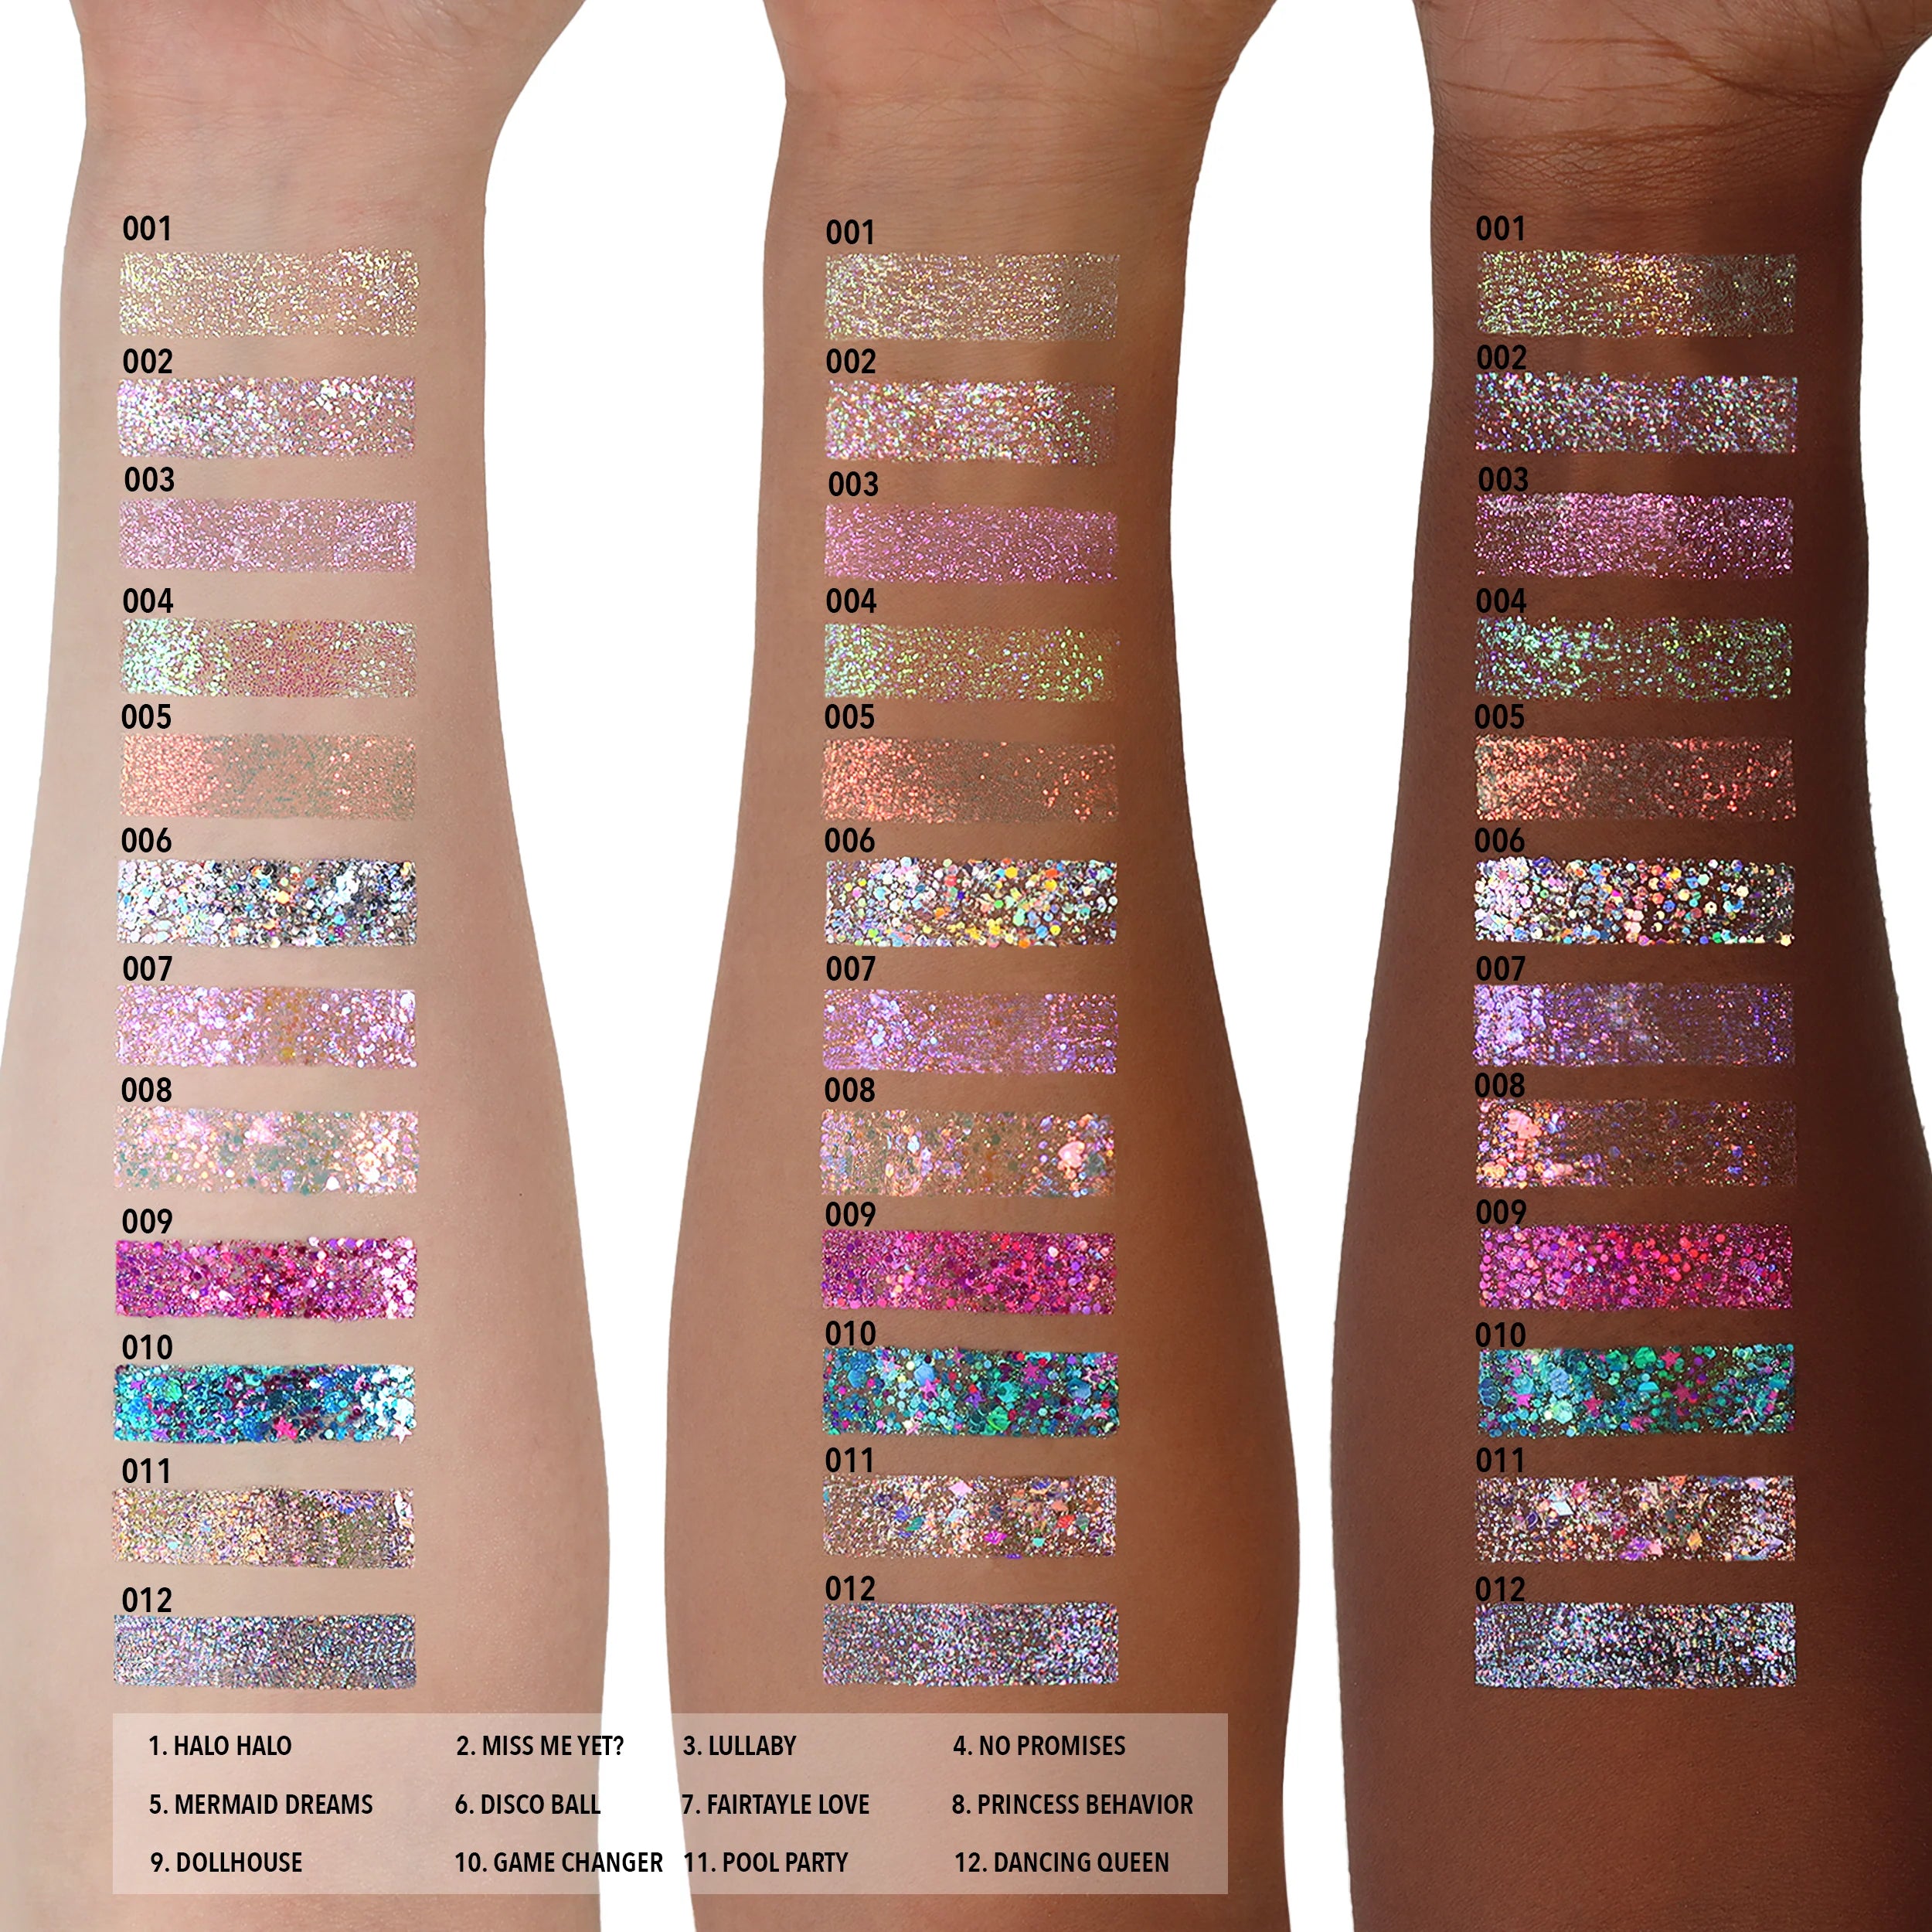 Moira Beauty - Hologram Glitter Gel Princess Behavior